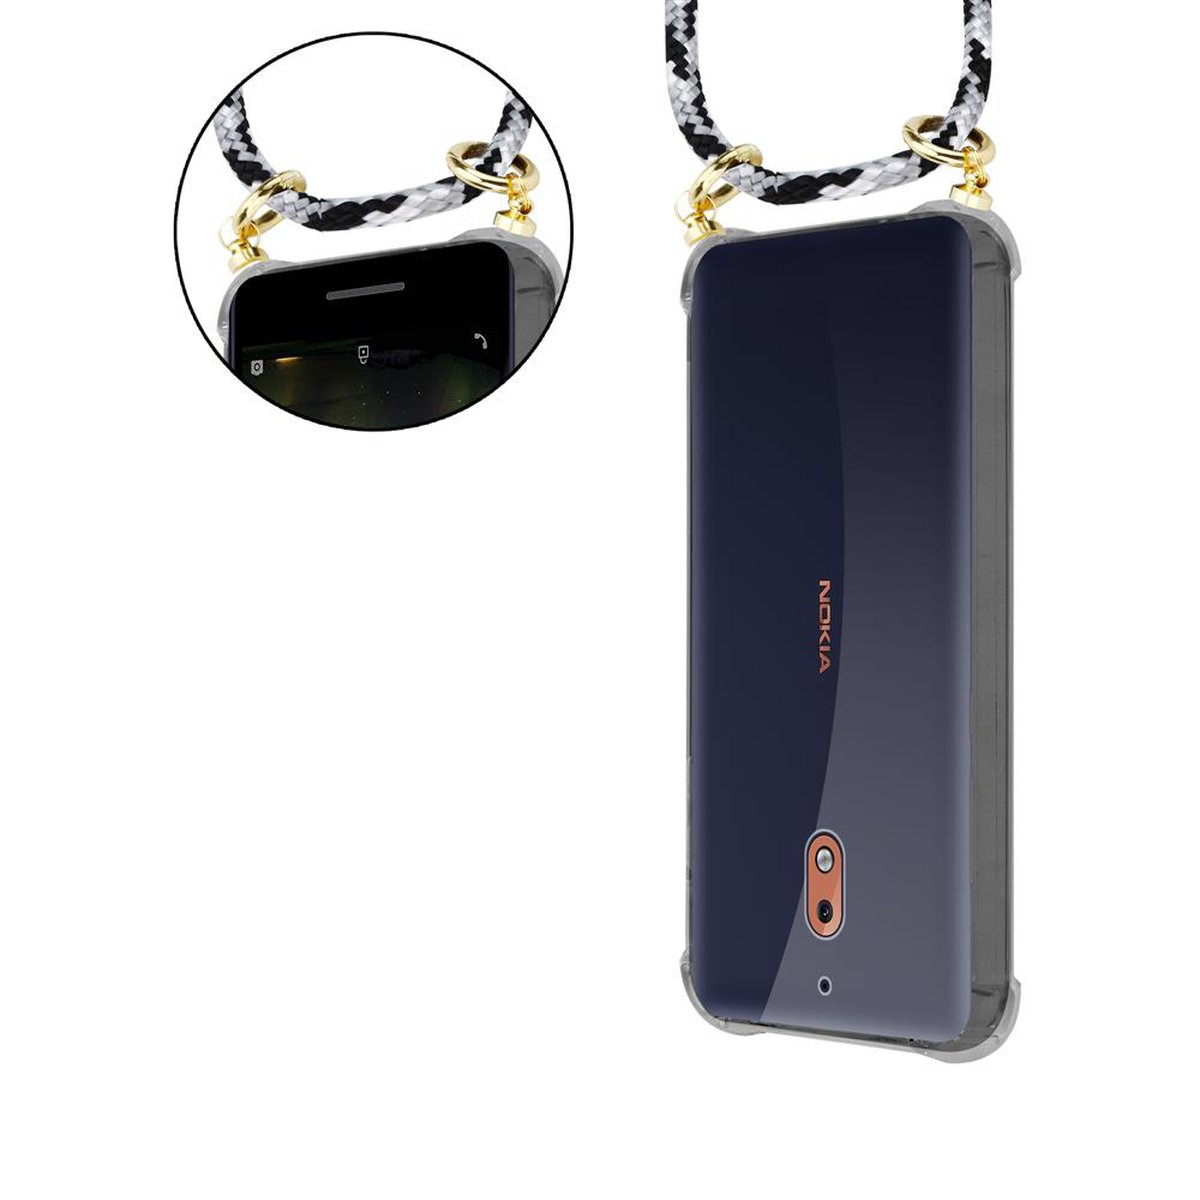 SCHWARZ CAMOUFLAGE Nokia, Kordel mit 2.1, Backcover, Kette CADORABO Handy abnehmbarer Hülle, und Gold Ringen, Band